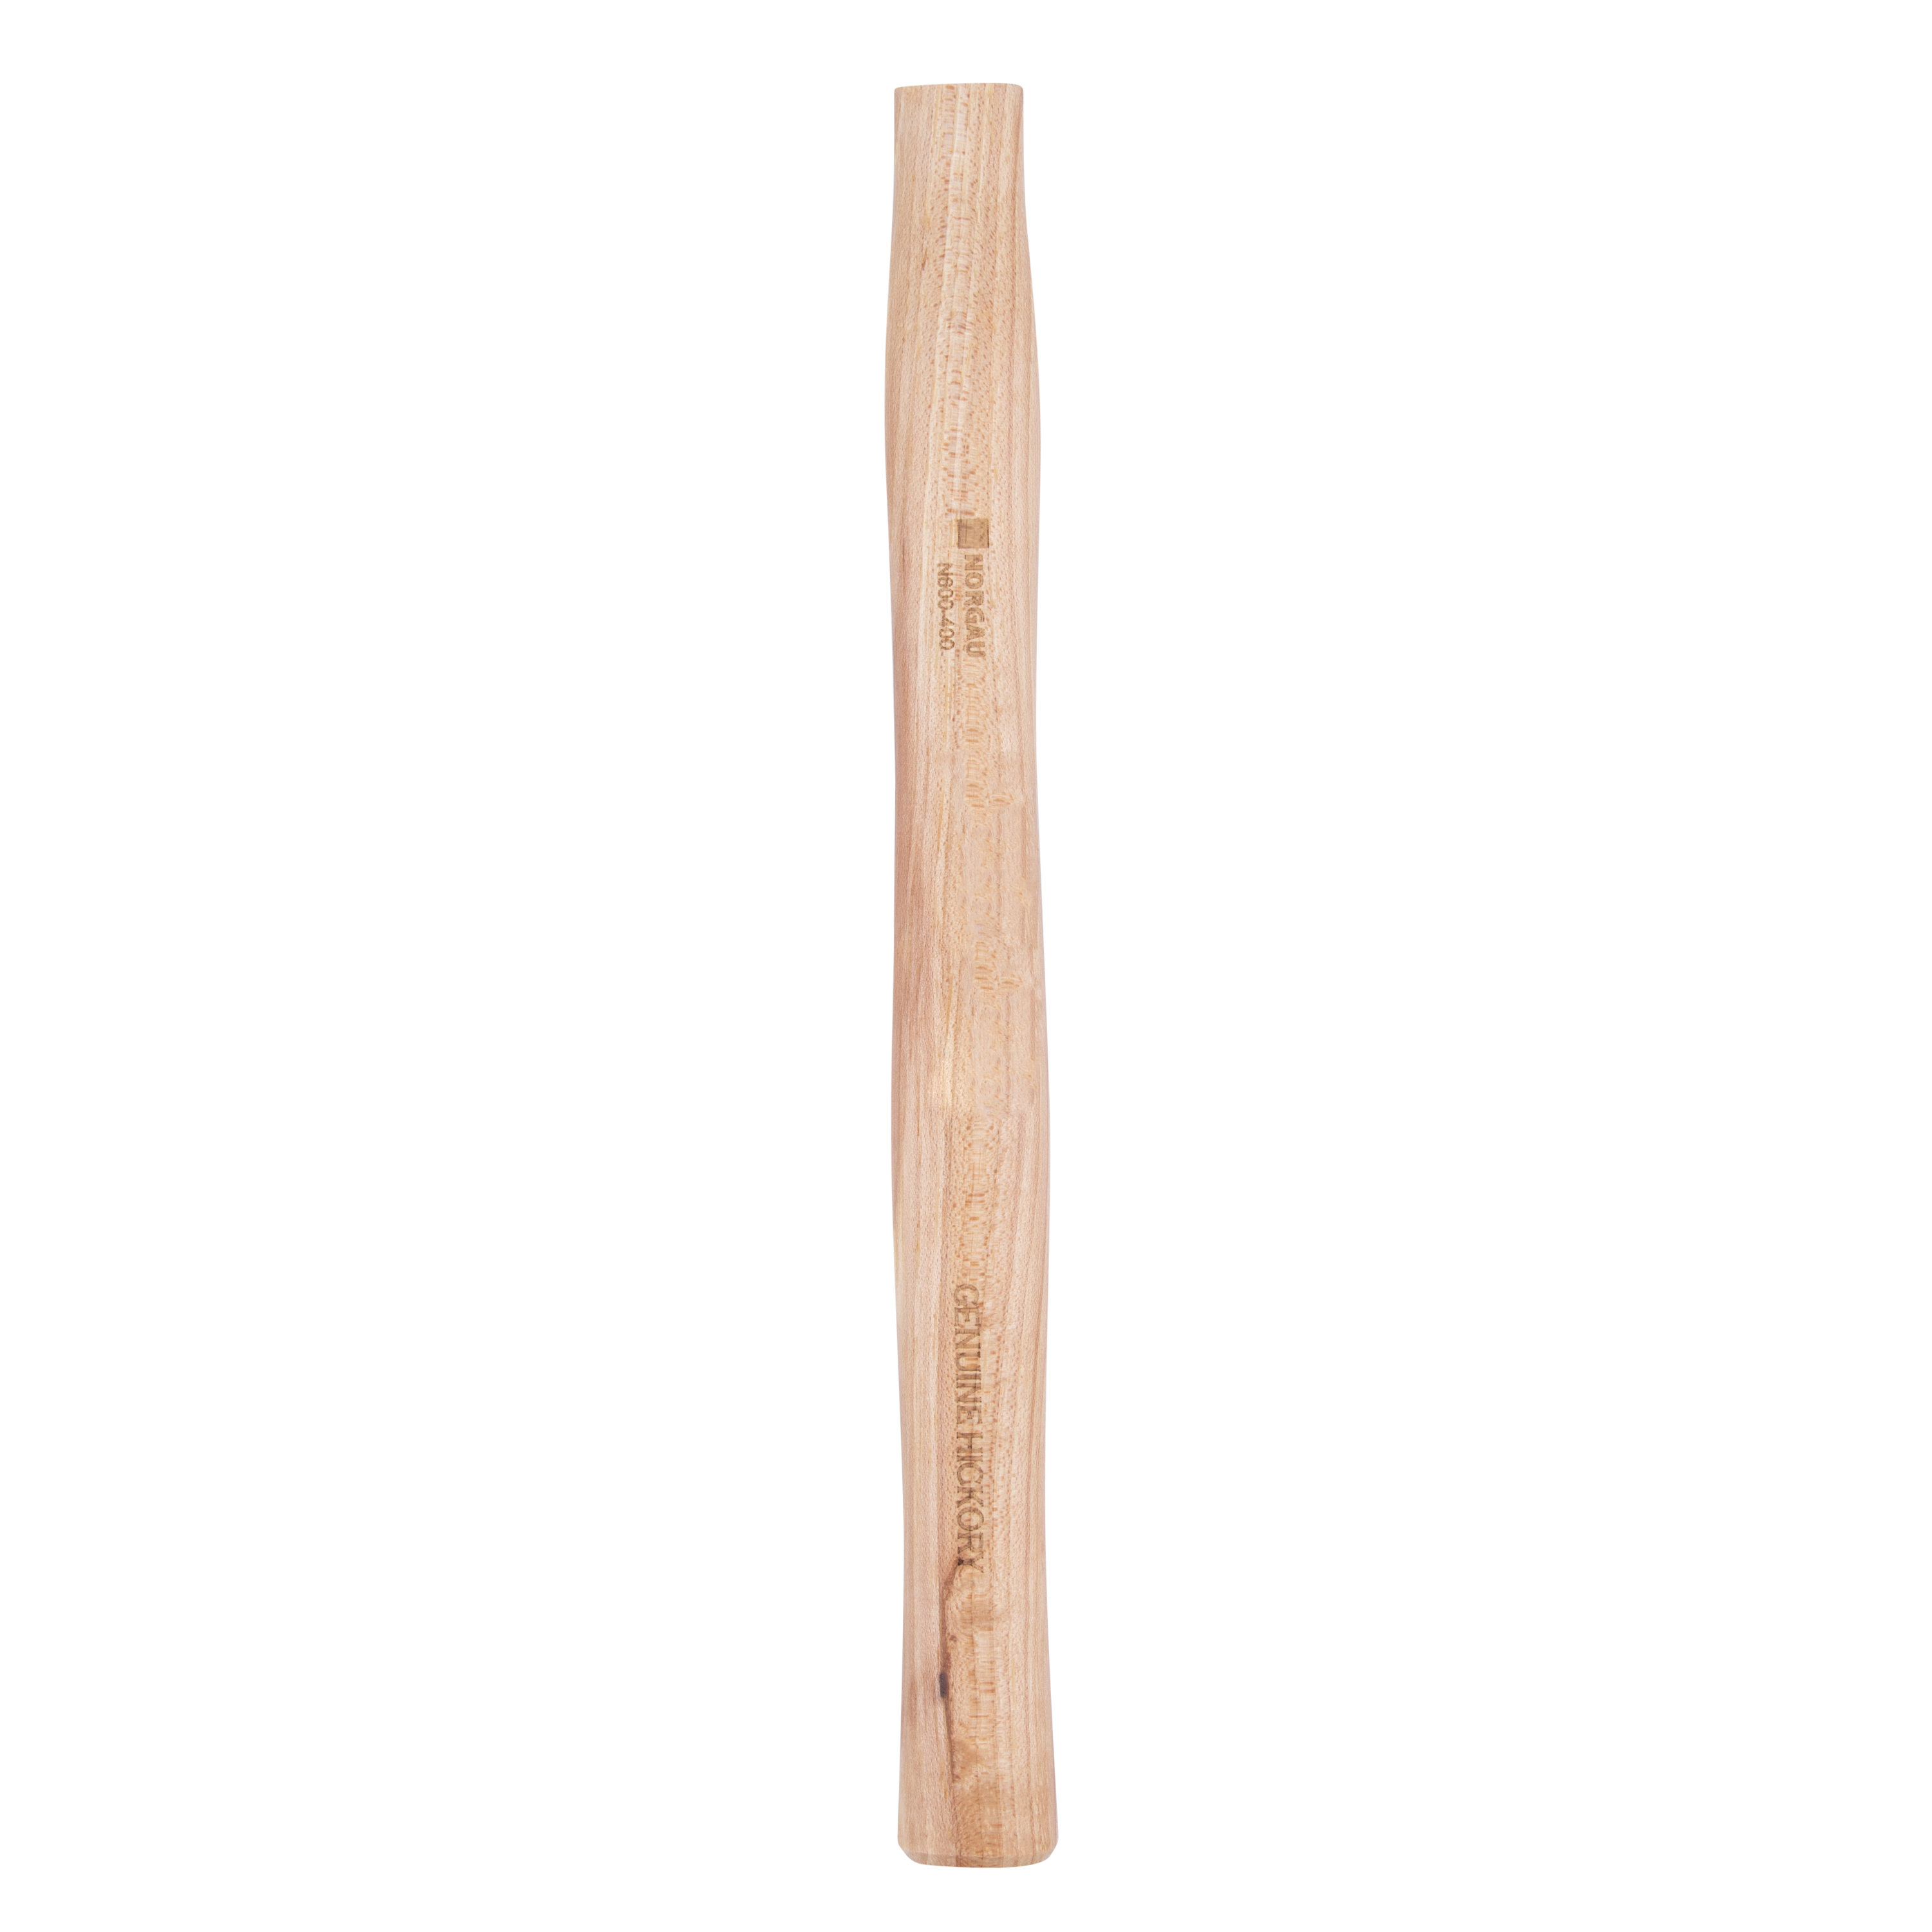 Рукоятка NORGAU Industrial запаснаядля молотка 400 г, из древесины гикори, 300 мм рукоятка для молотка 320 мм из березы шлифованная